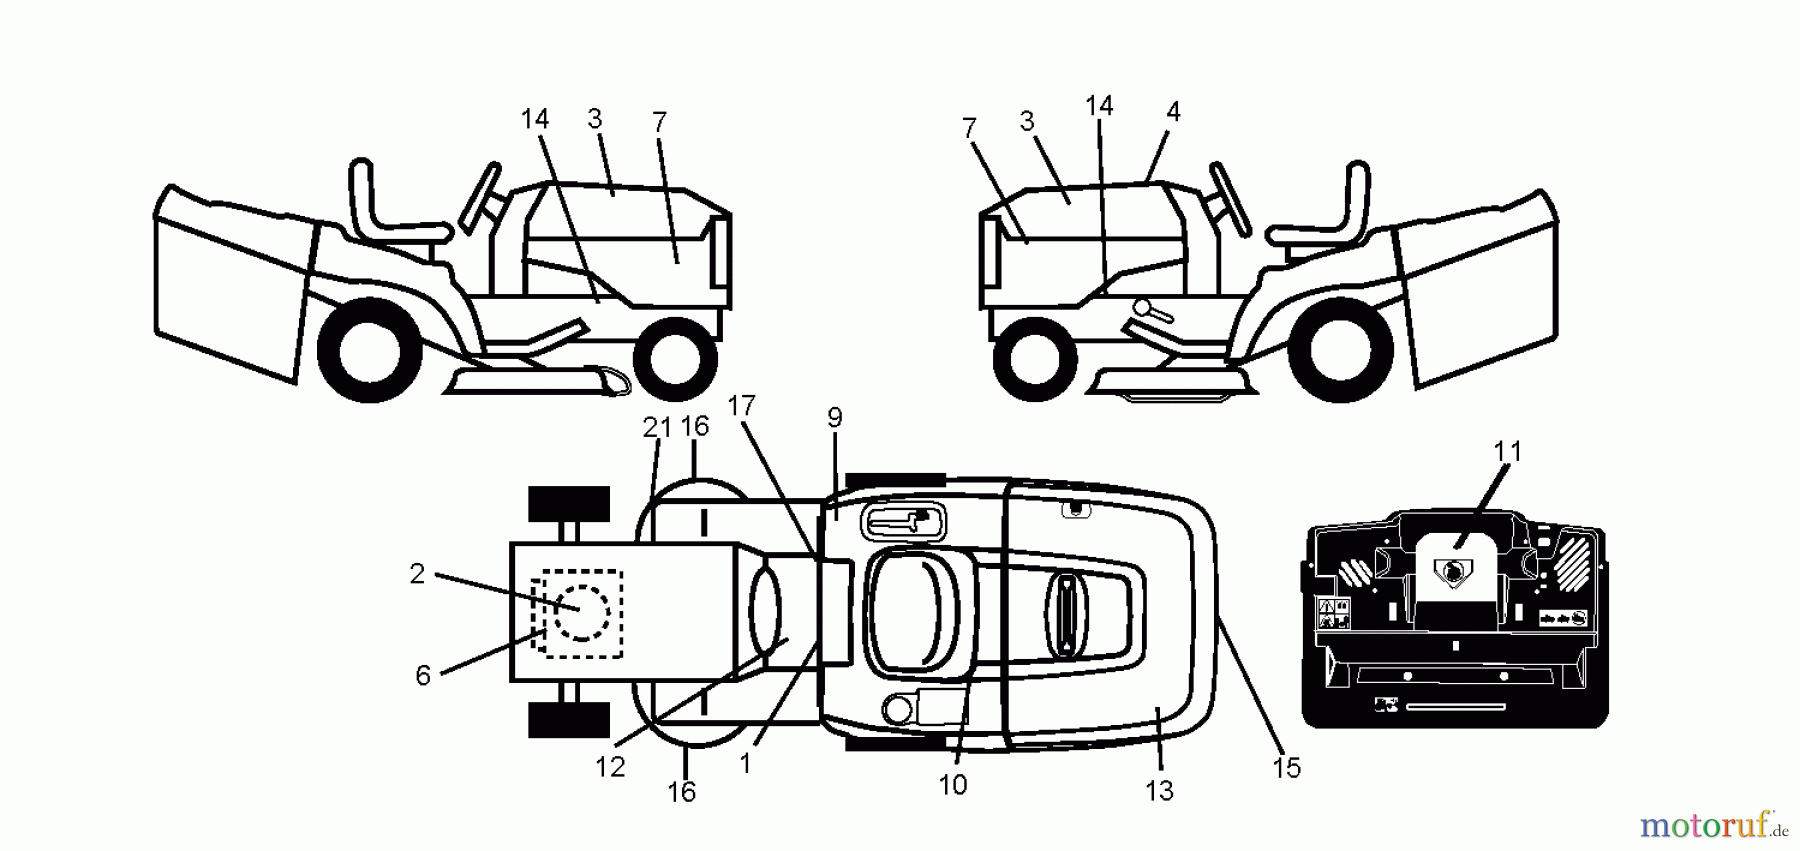  Jonsered Rasen  und Garten Traktoren LT2113 CM (96061022405) - Jonsered Lawn & Garden Tractor (2011-01) DECALS